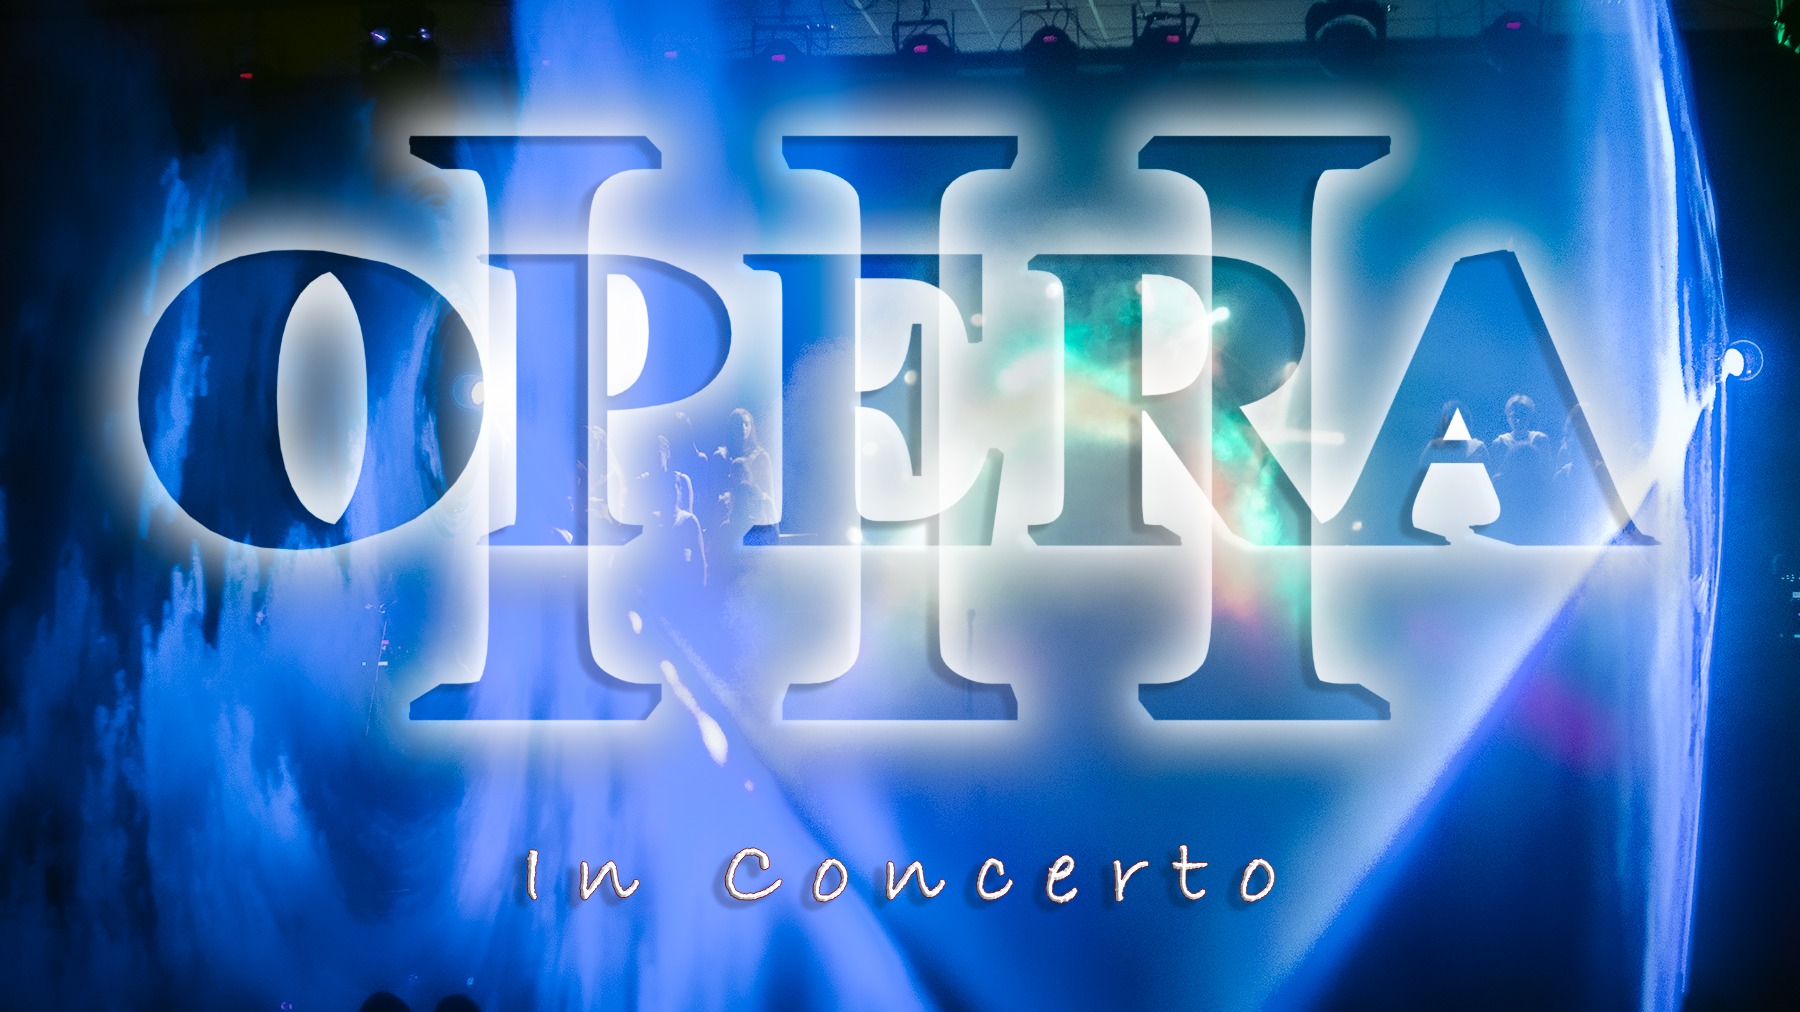 Opera III in Concerto @ La Pergola - Fagnano Olona